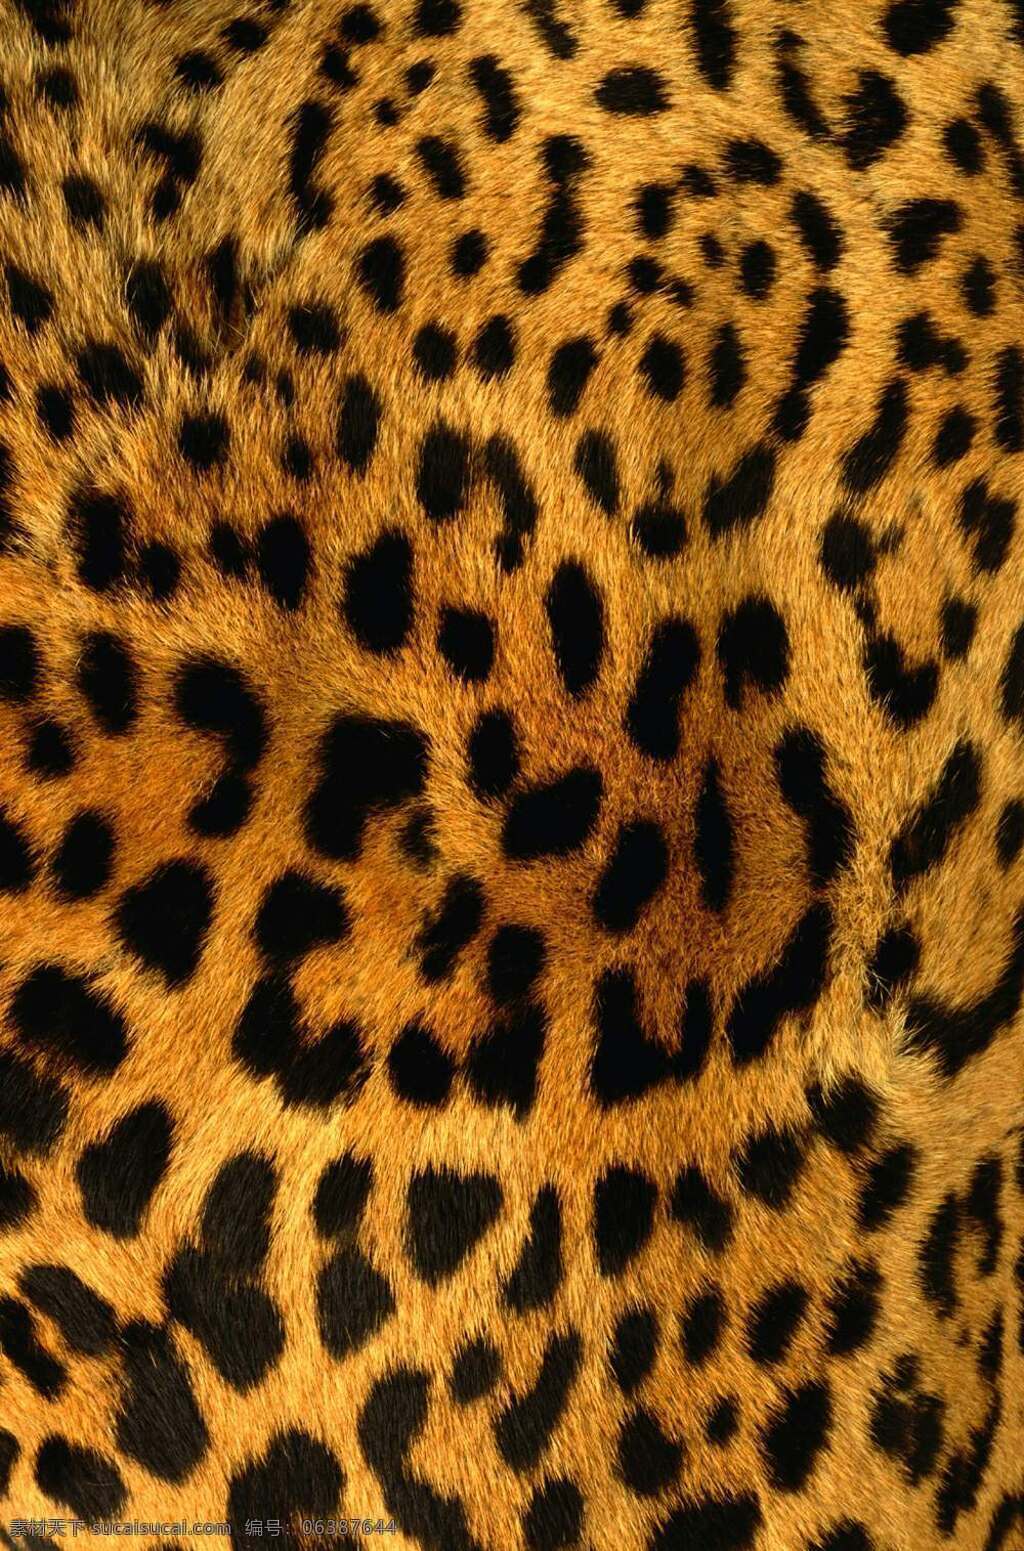 豹纹材质 豹纹贴图 动物皮毛材质 动物皮毛贴图 老虎皮毛材质 老虎皮毛贴图 底纹边框 背景底纹